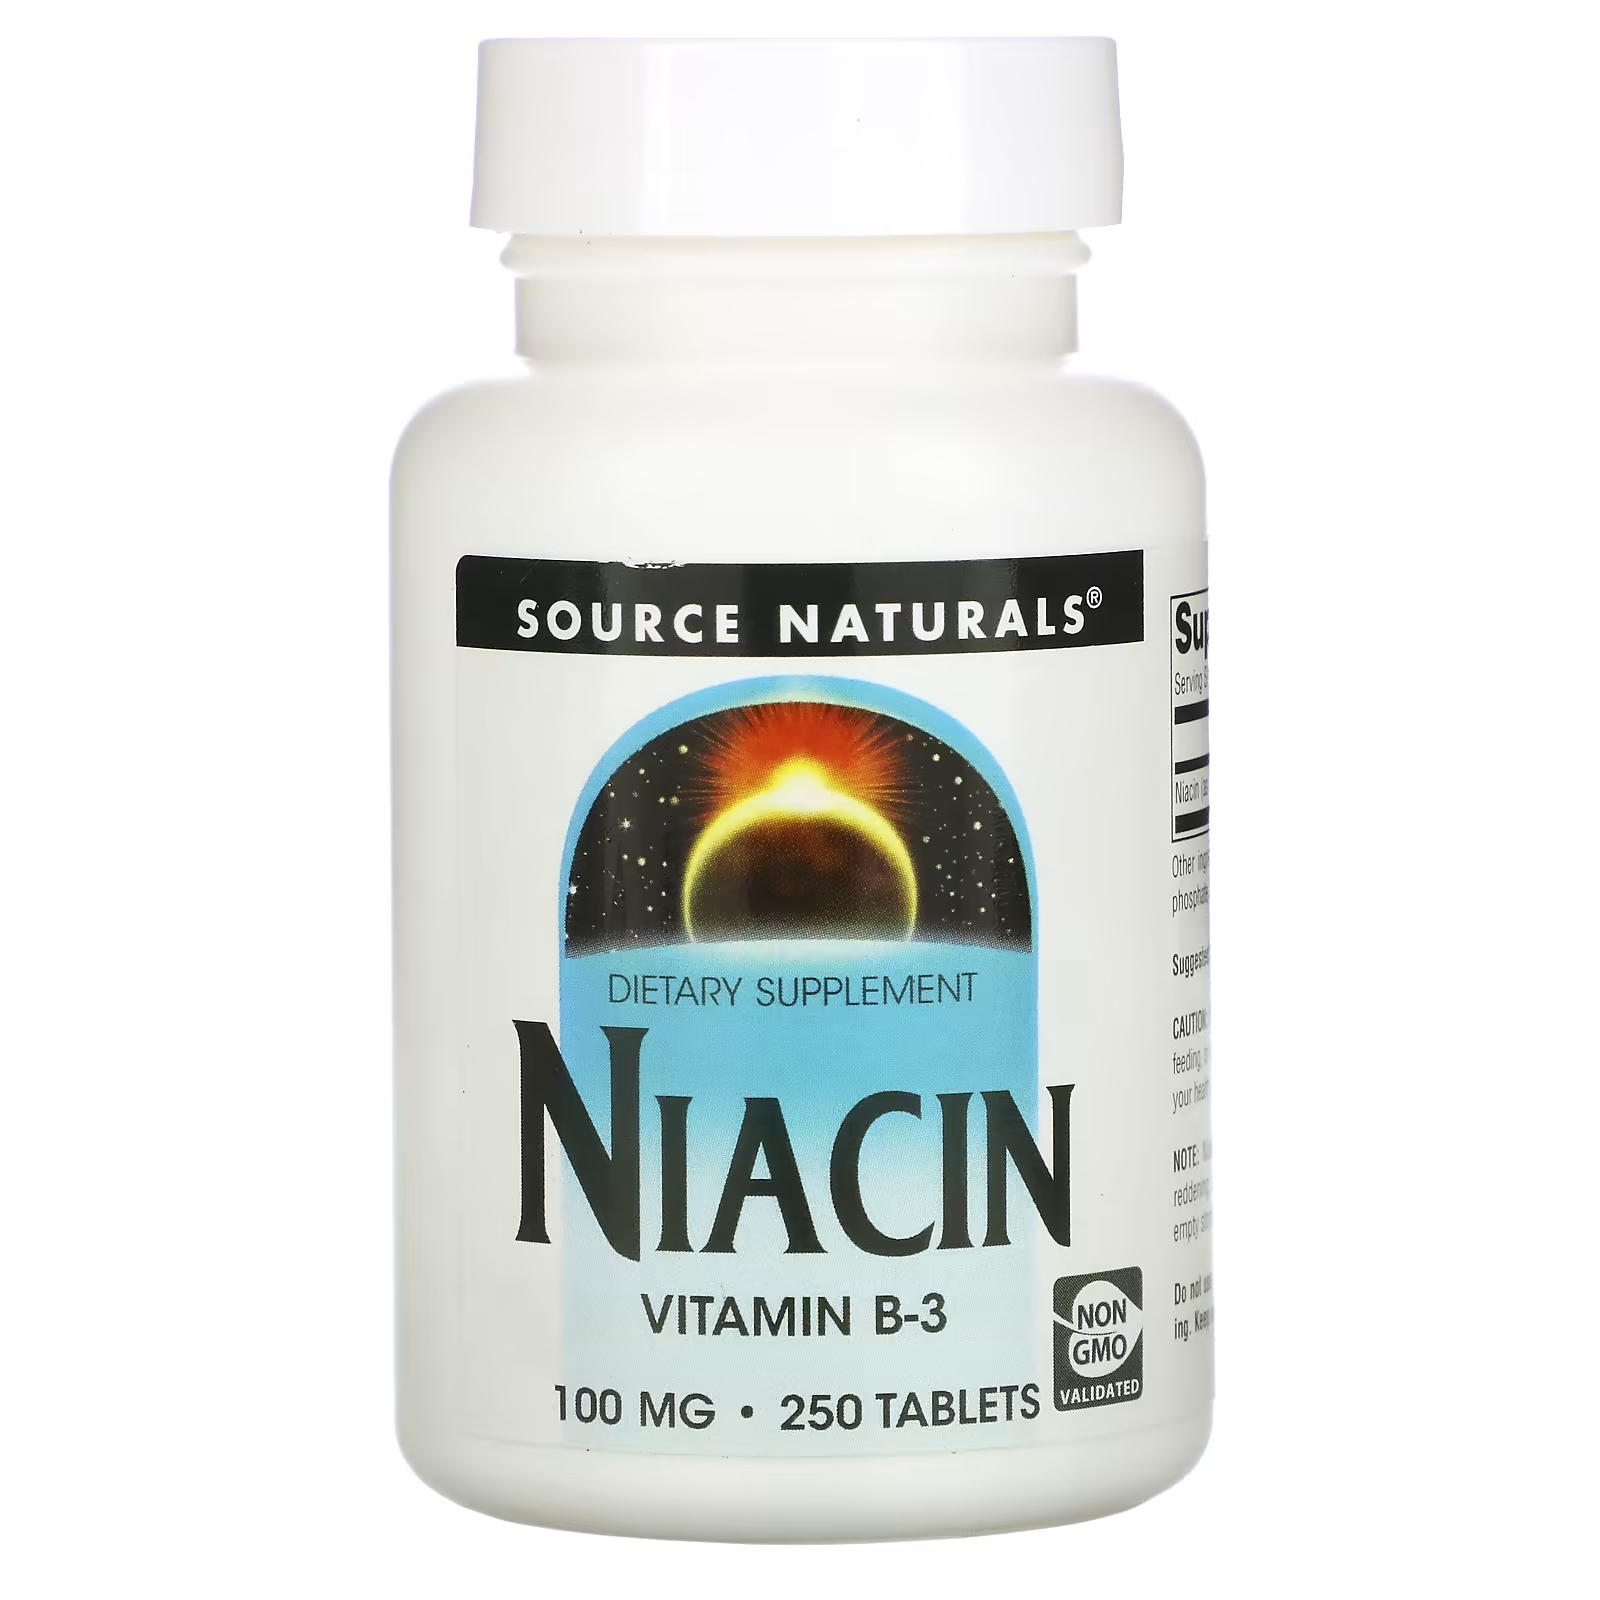 Source Naturals ниацин 100 мг, 250 таблеток цена и фото